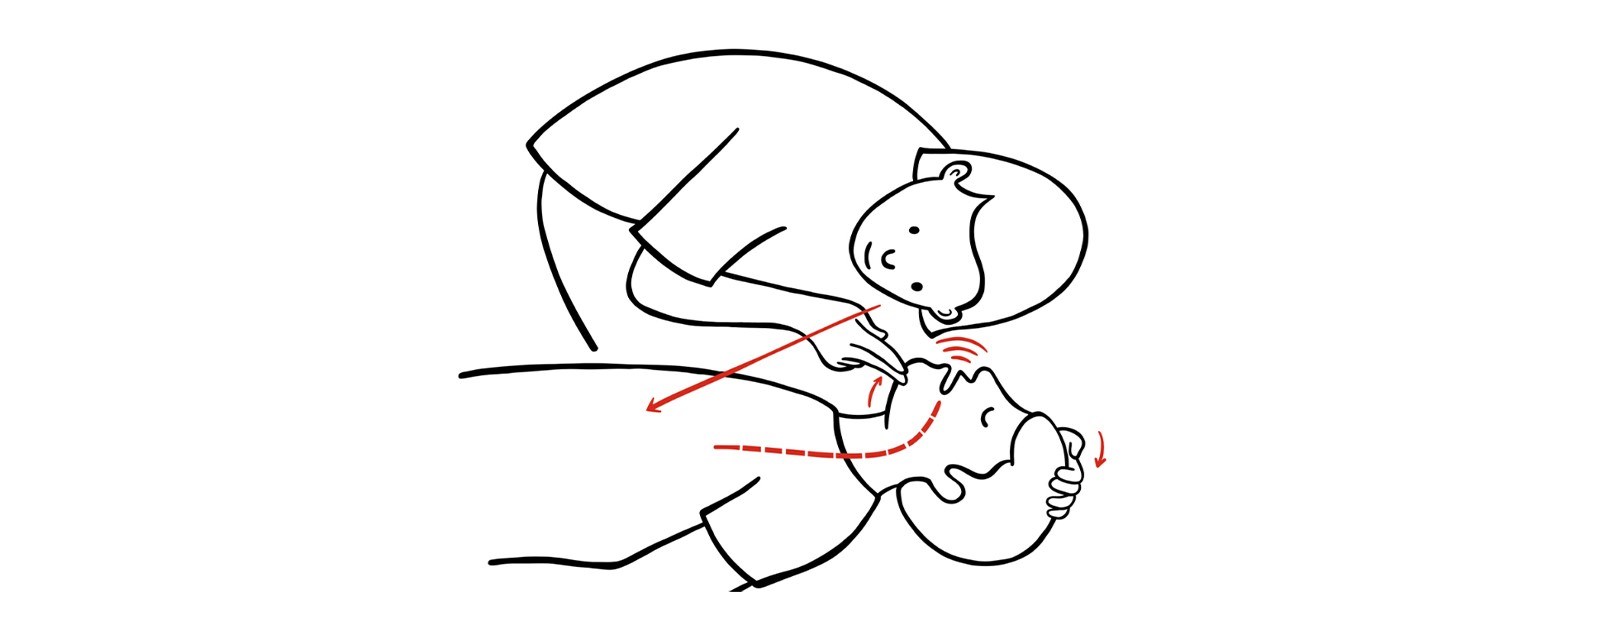 Illustrasjon av en person som utfører førstehjelp